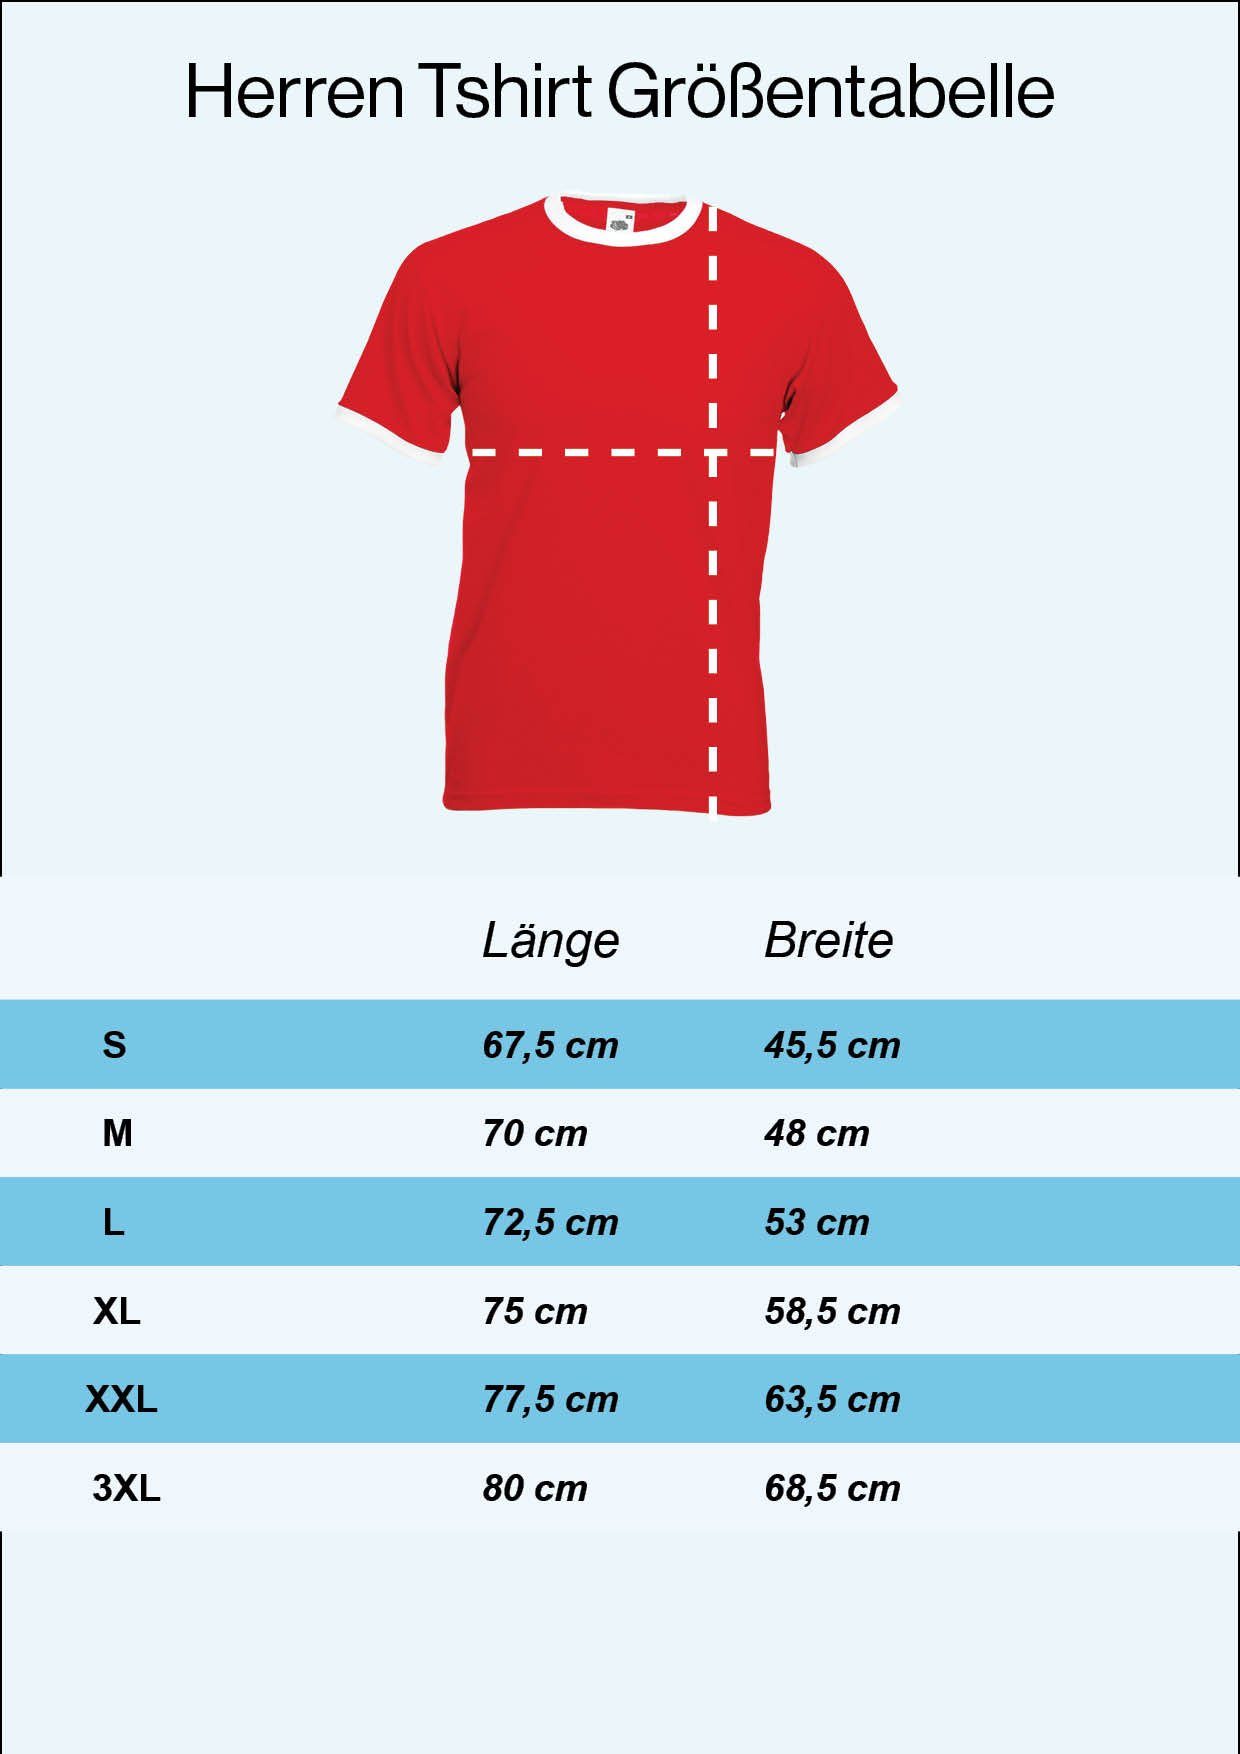 Youth Designz im Marokko Trikot Motiv Herren Fußball trendigem Look XXL T-Shirt T-Shirt mit